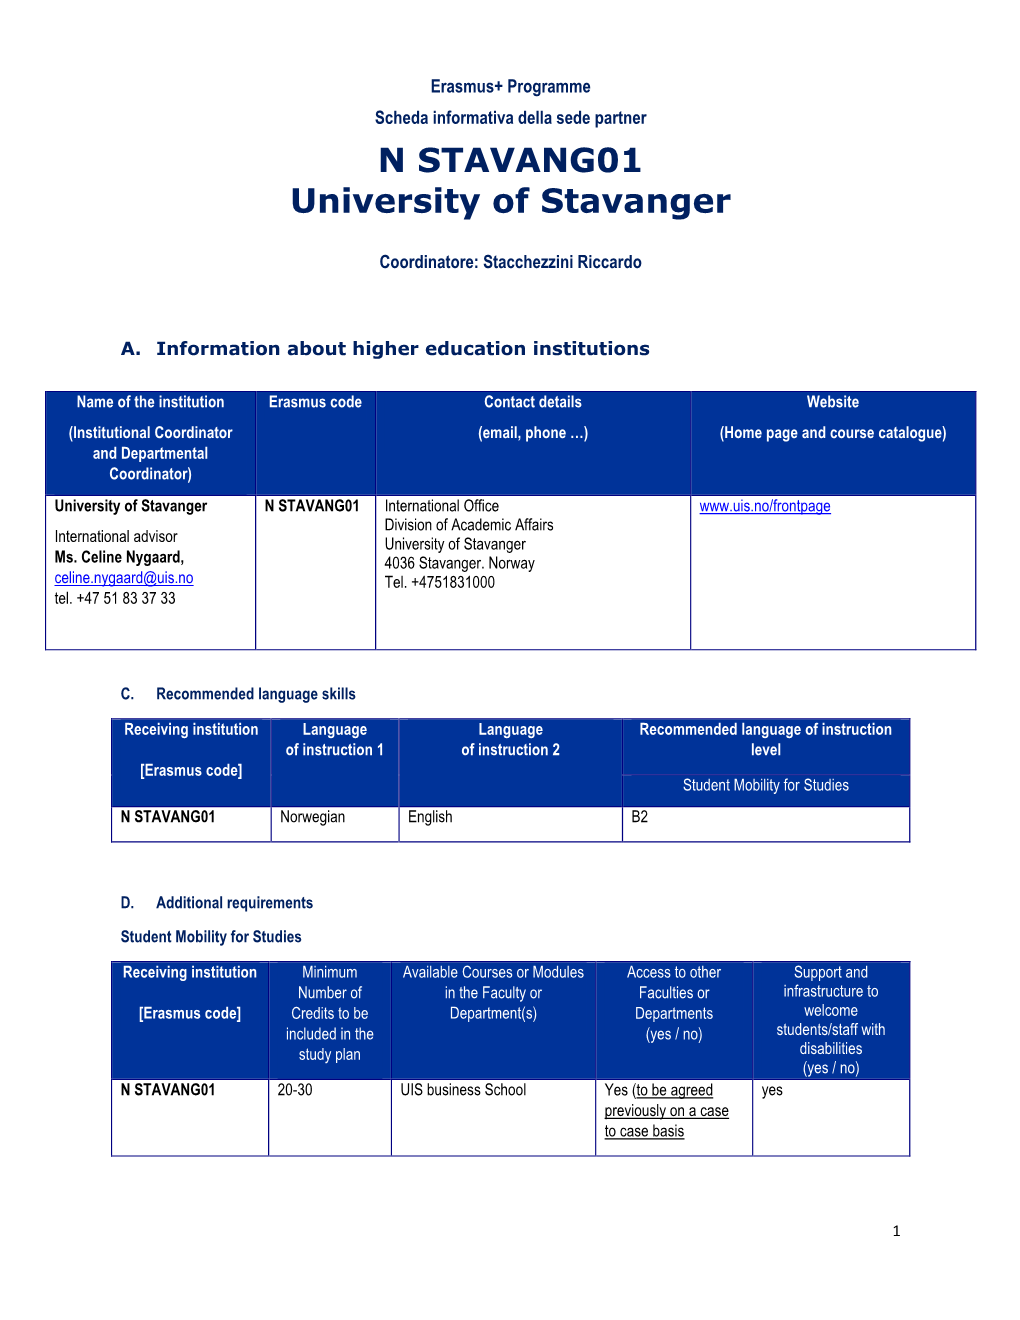 N STAVANG01 University of Stavanger